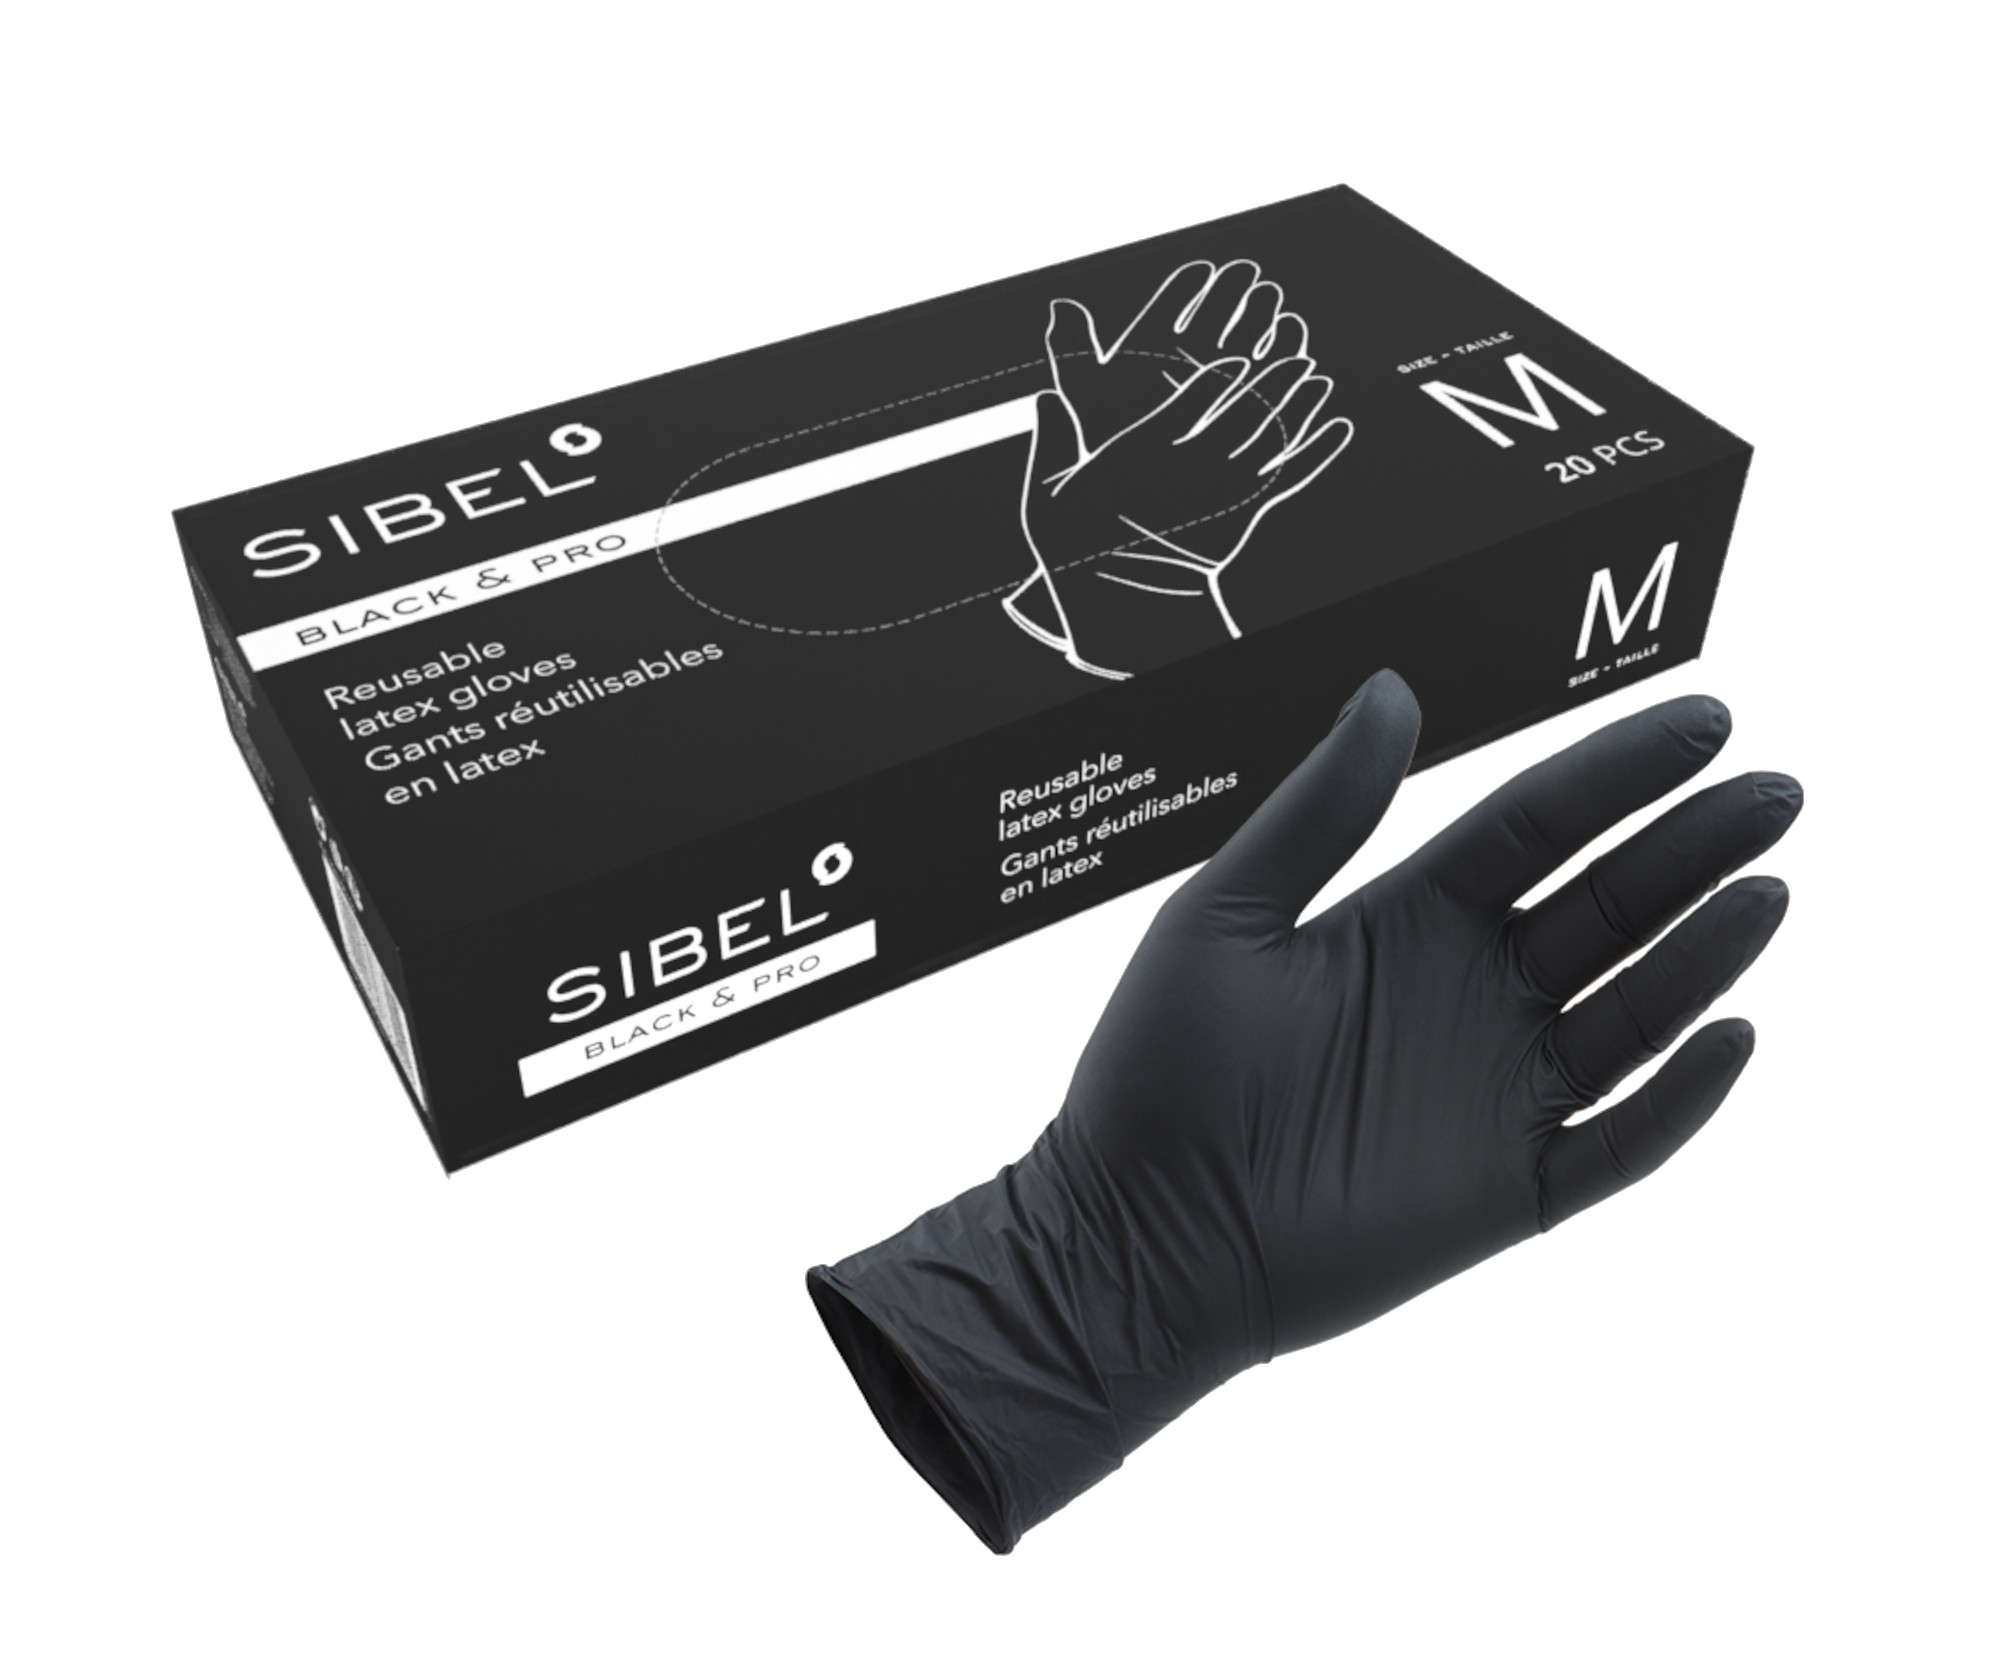 Latexové rukavice pro kadeřníky Sibel Black Pro 20 ks - M (094000155) + dárek zdarma